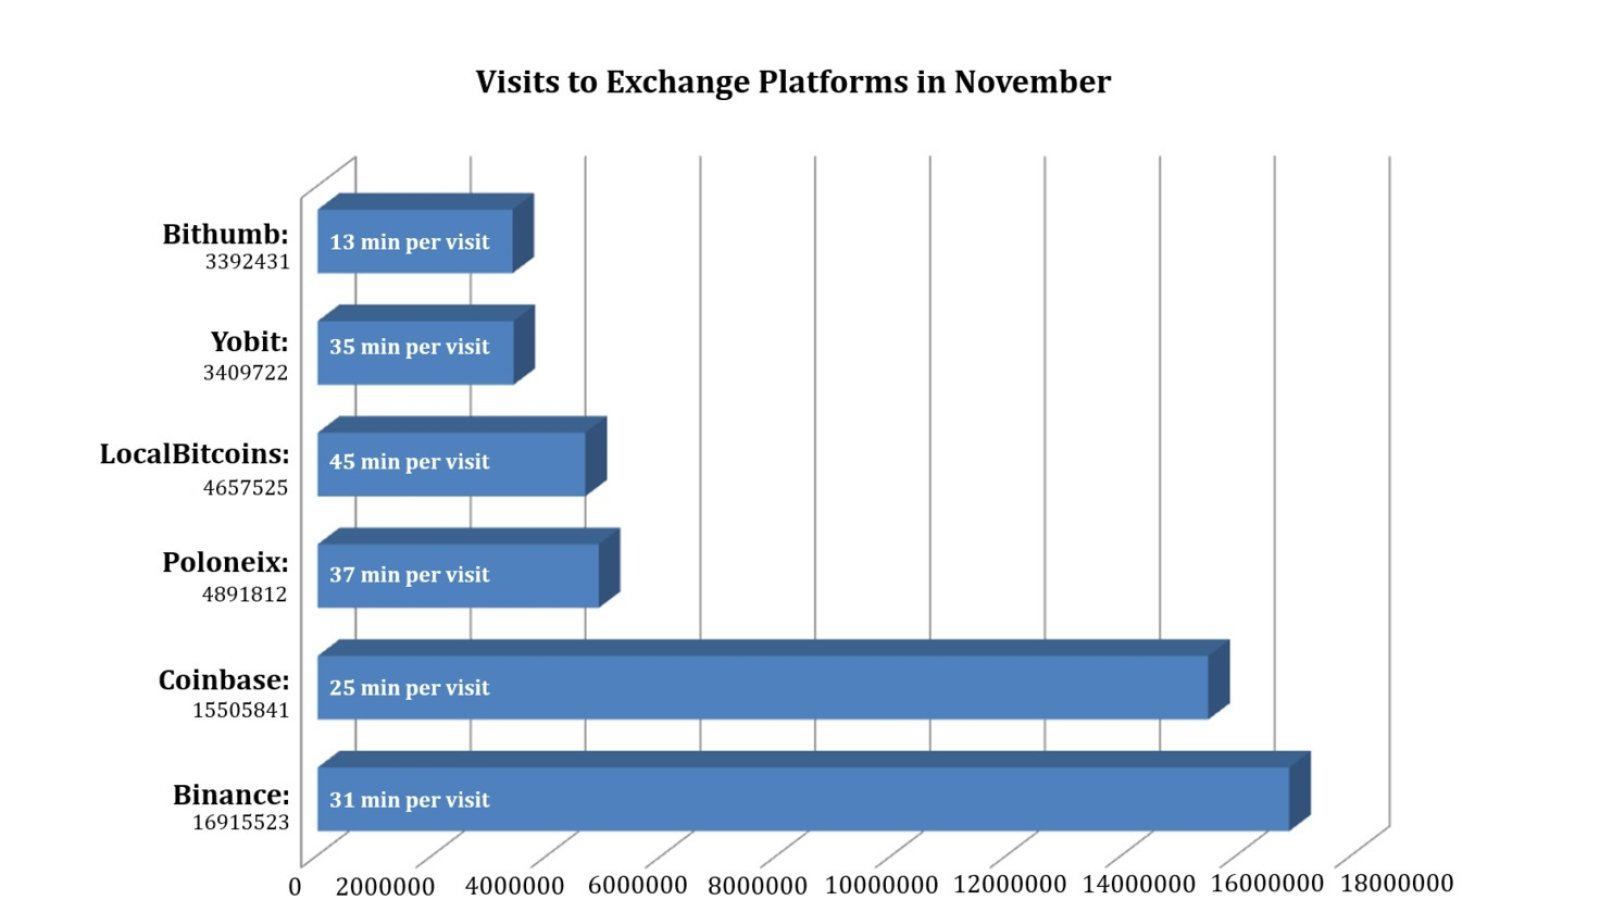 Visits to Exchange Platforms